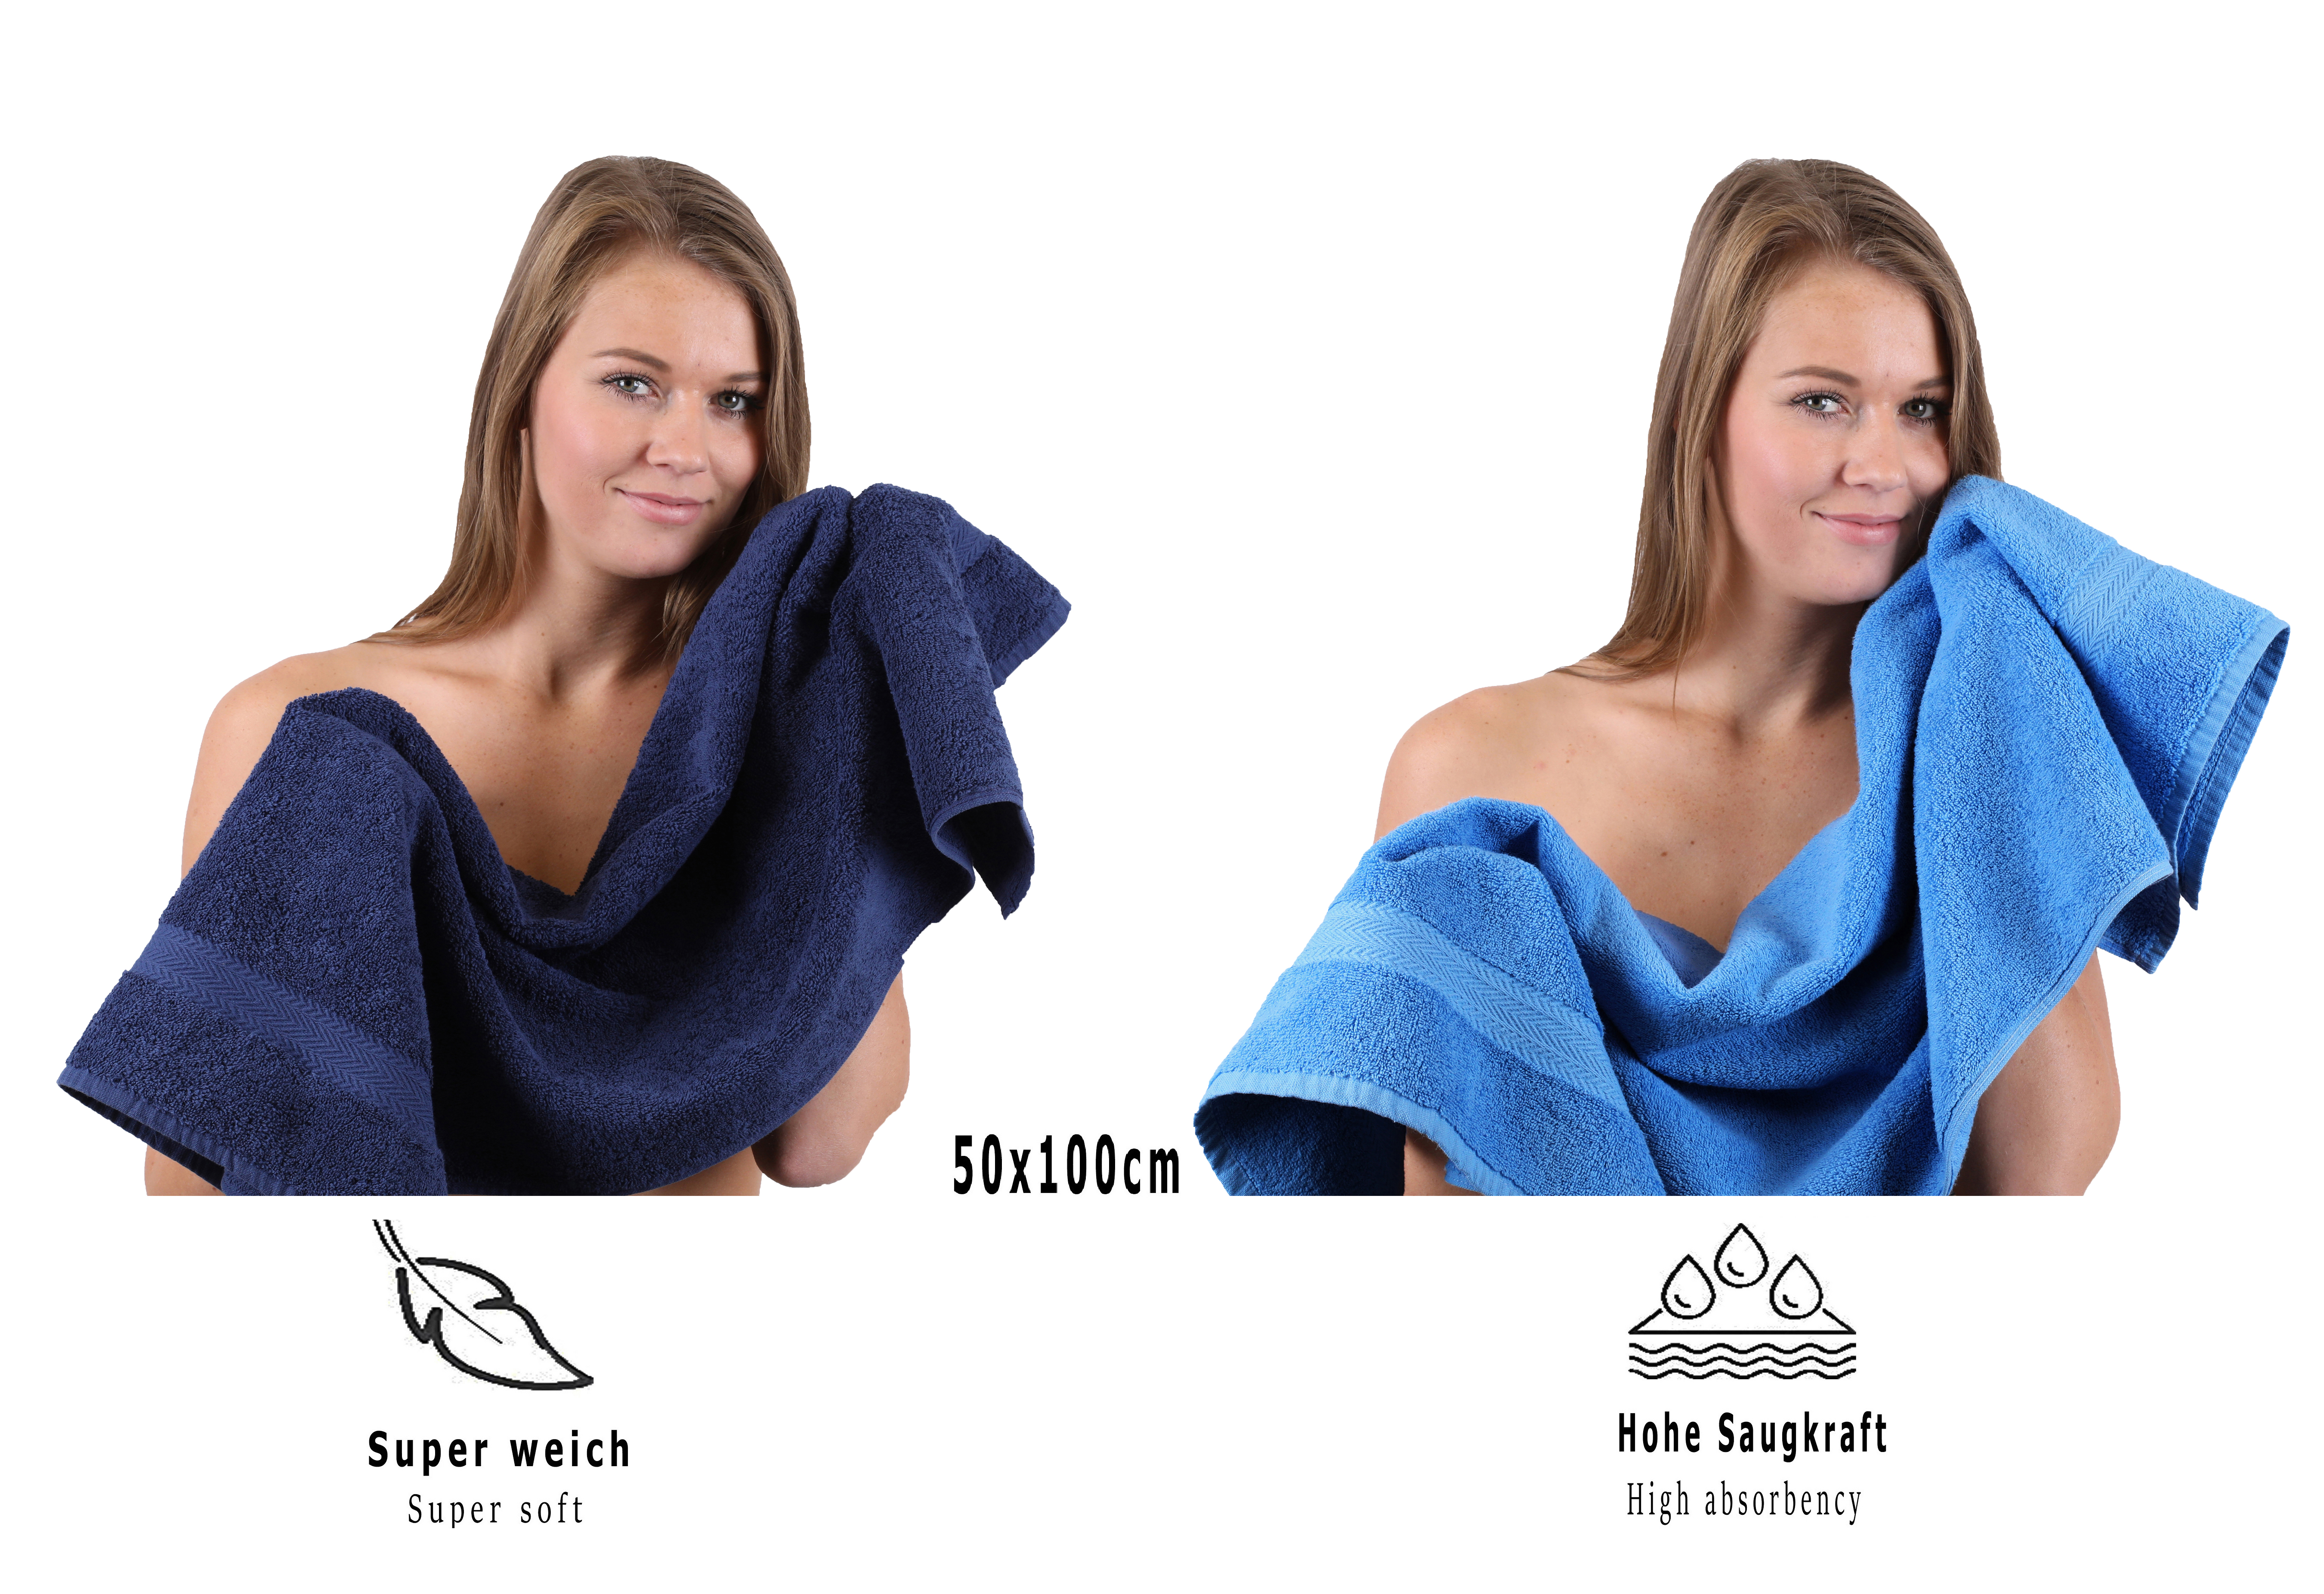 Betz 10 Lavette salvietta asciugamano per il bidet Premium 100% cotone  misure 30x30 cm colore